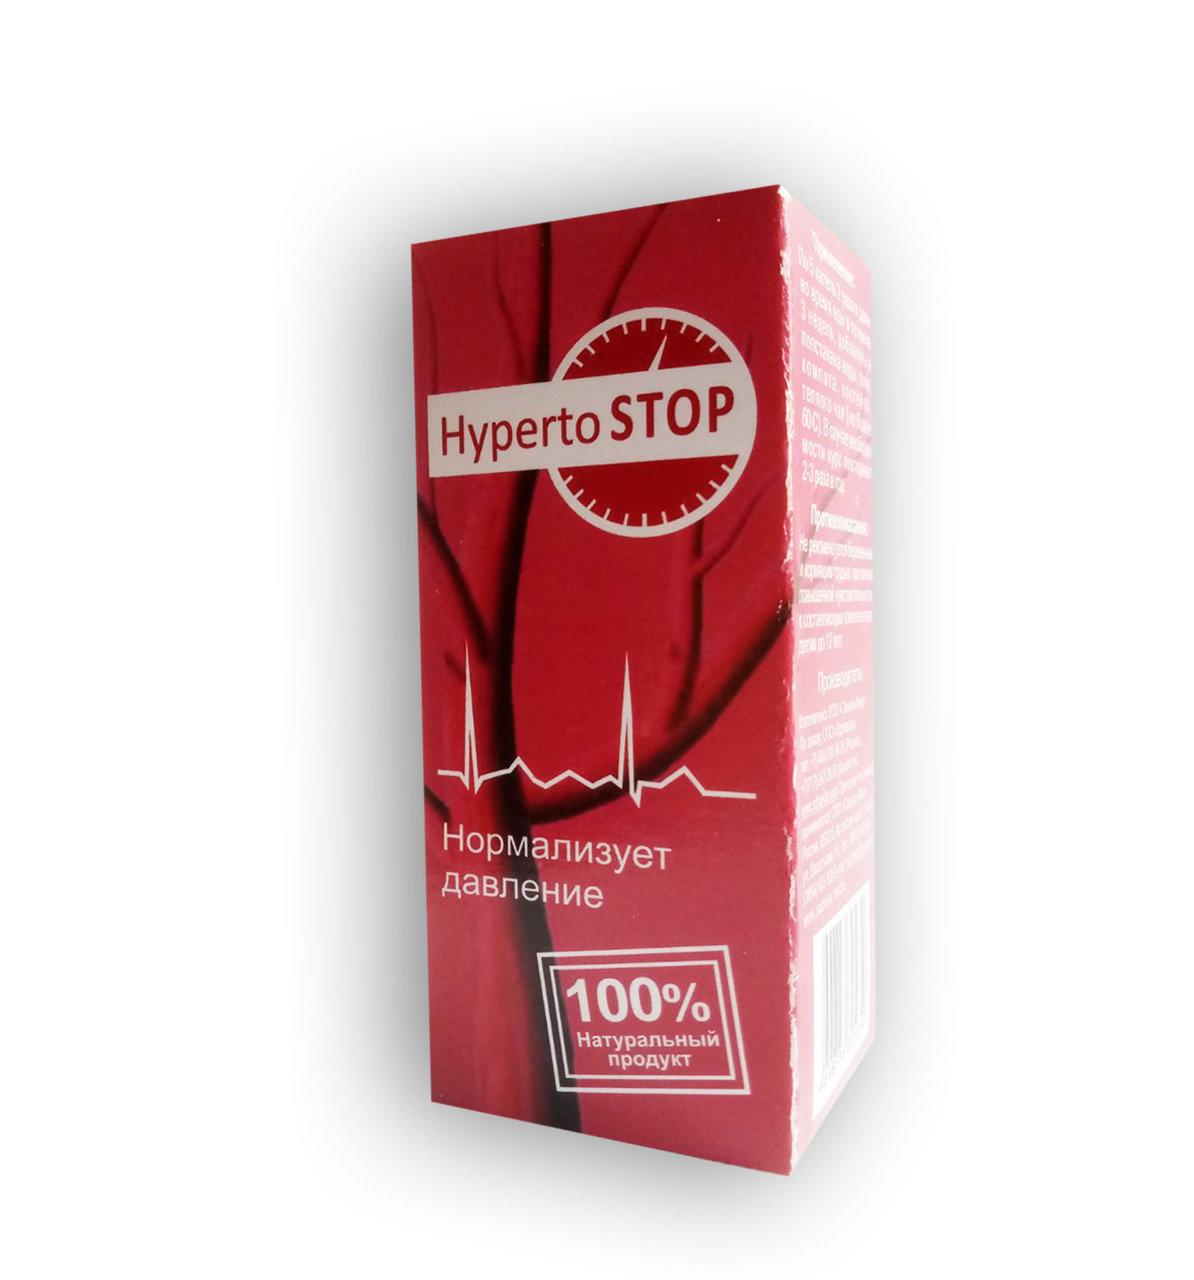 HypertoStop - Капли от гипертонии (ГипертоСтоп)